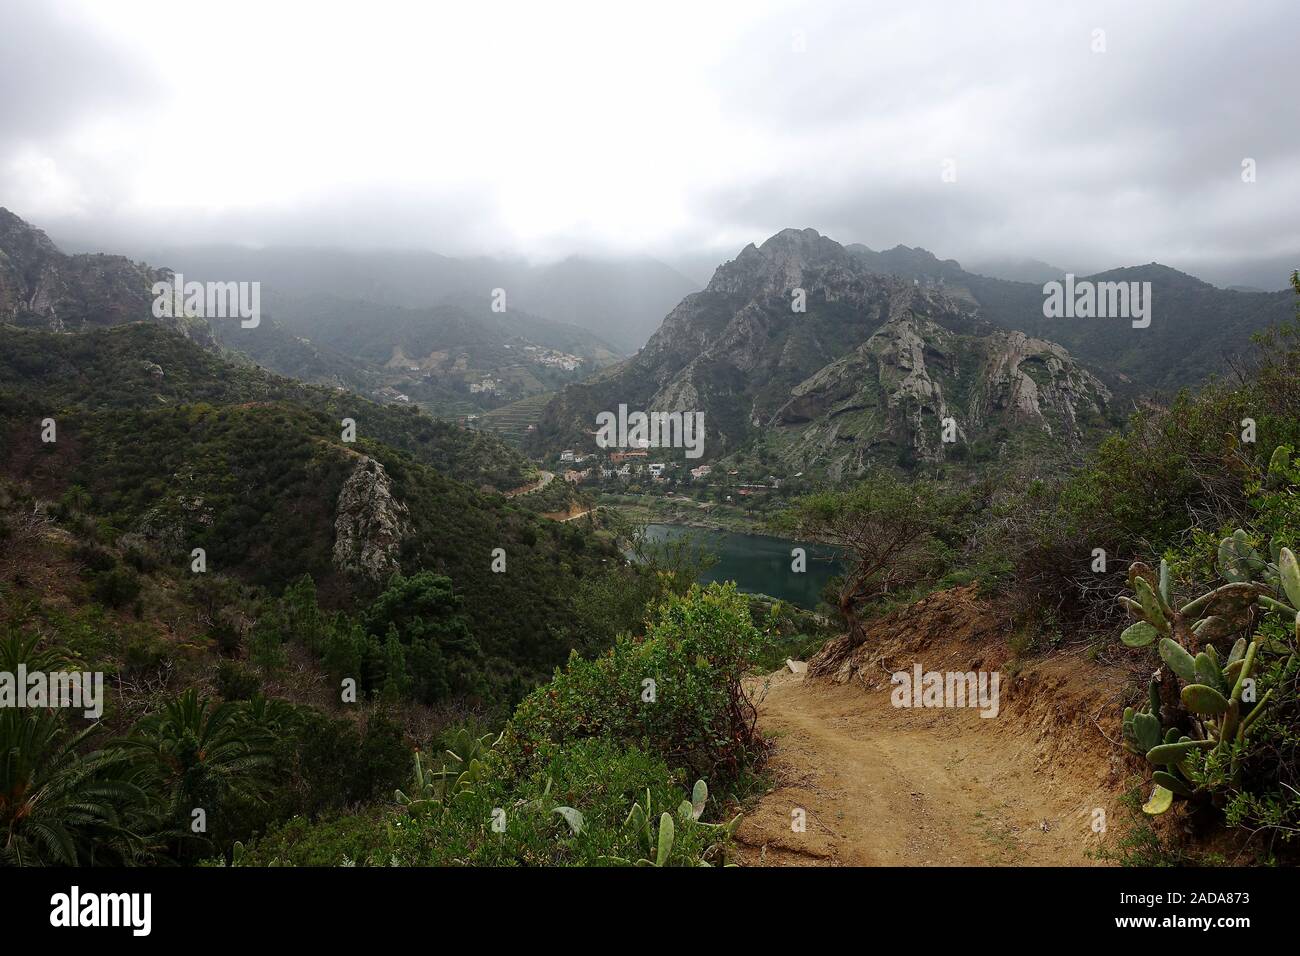 Characteristic landscape near Valhermoso, La Gomera, Spain Stock Photo